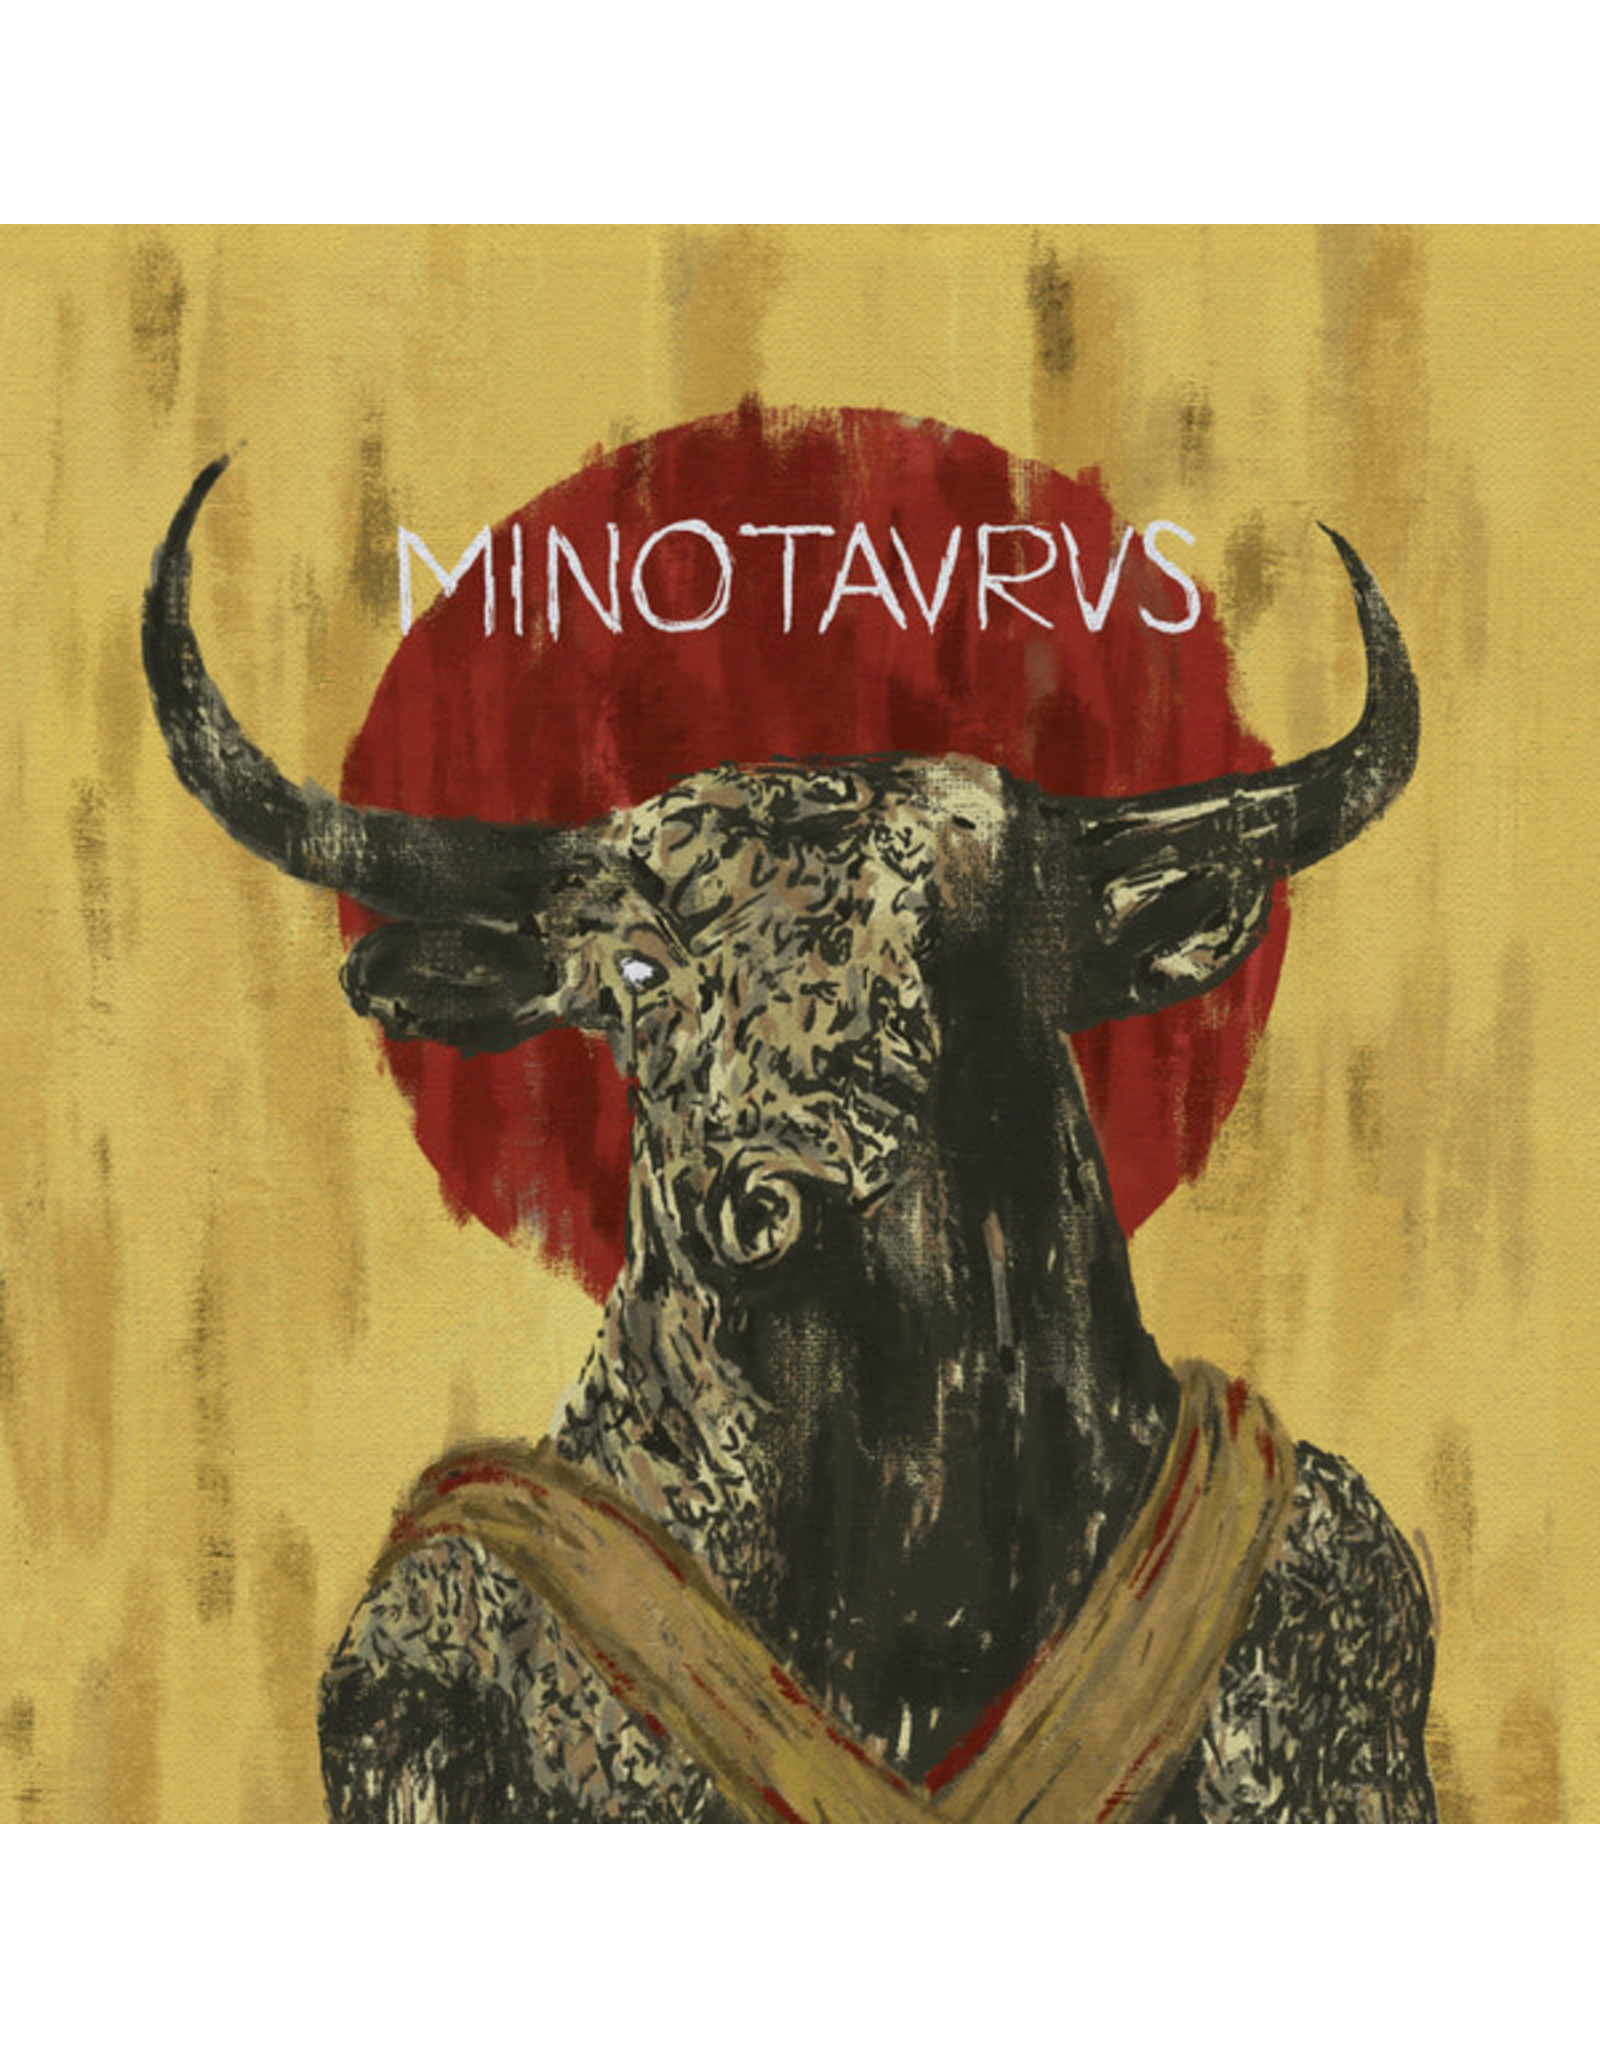 Mansur - Minotaurus (180g Red Vinyl) LP